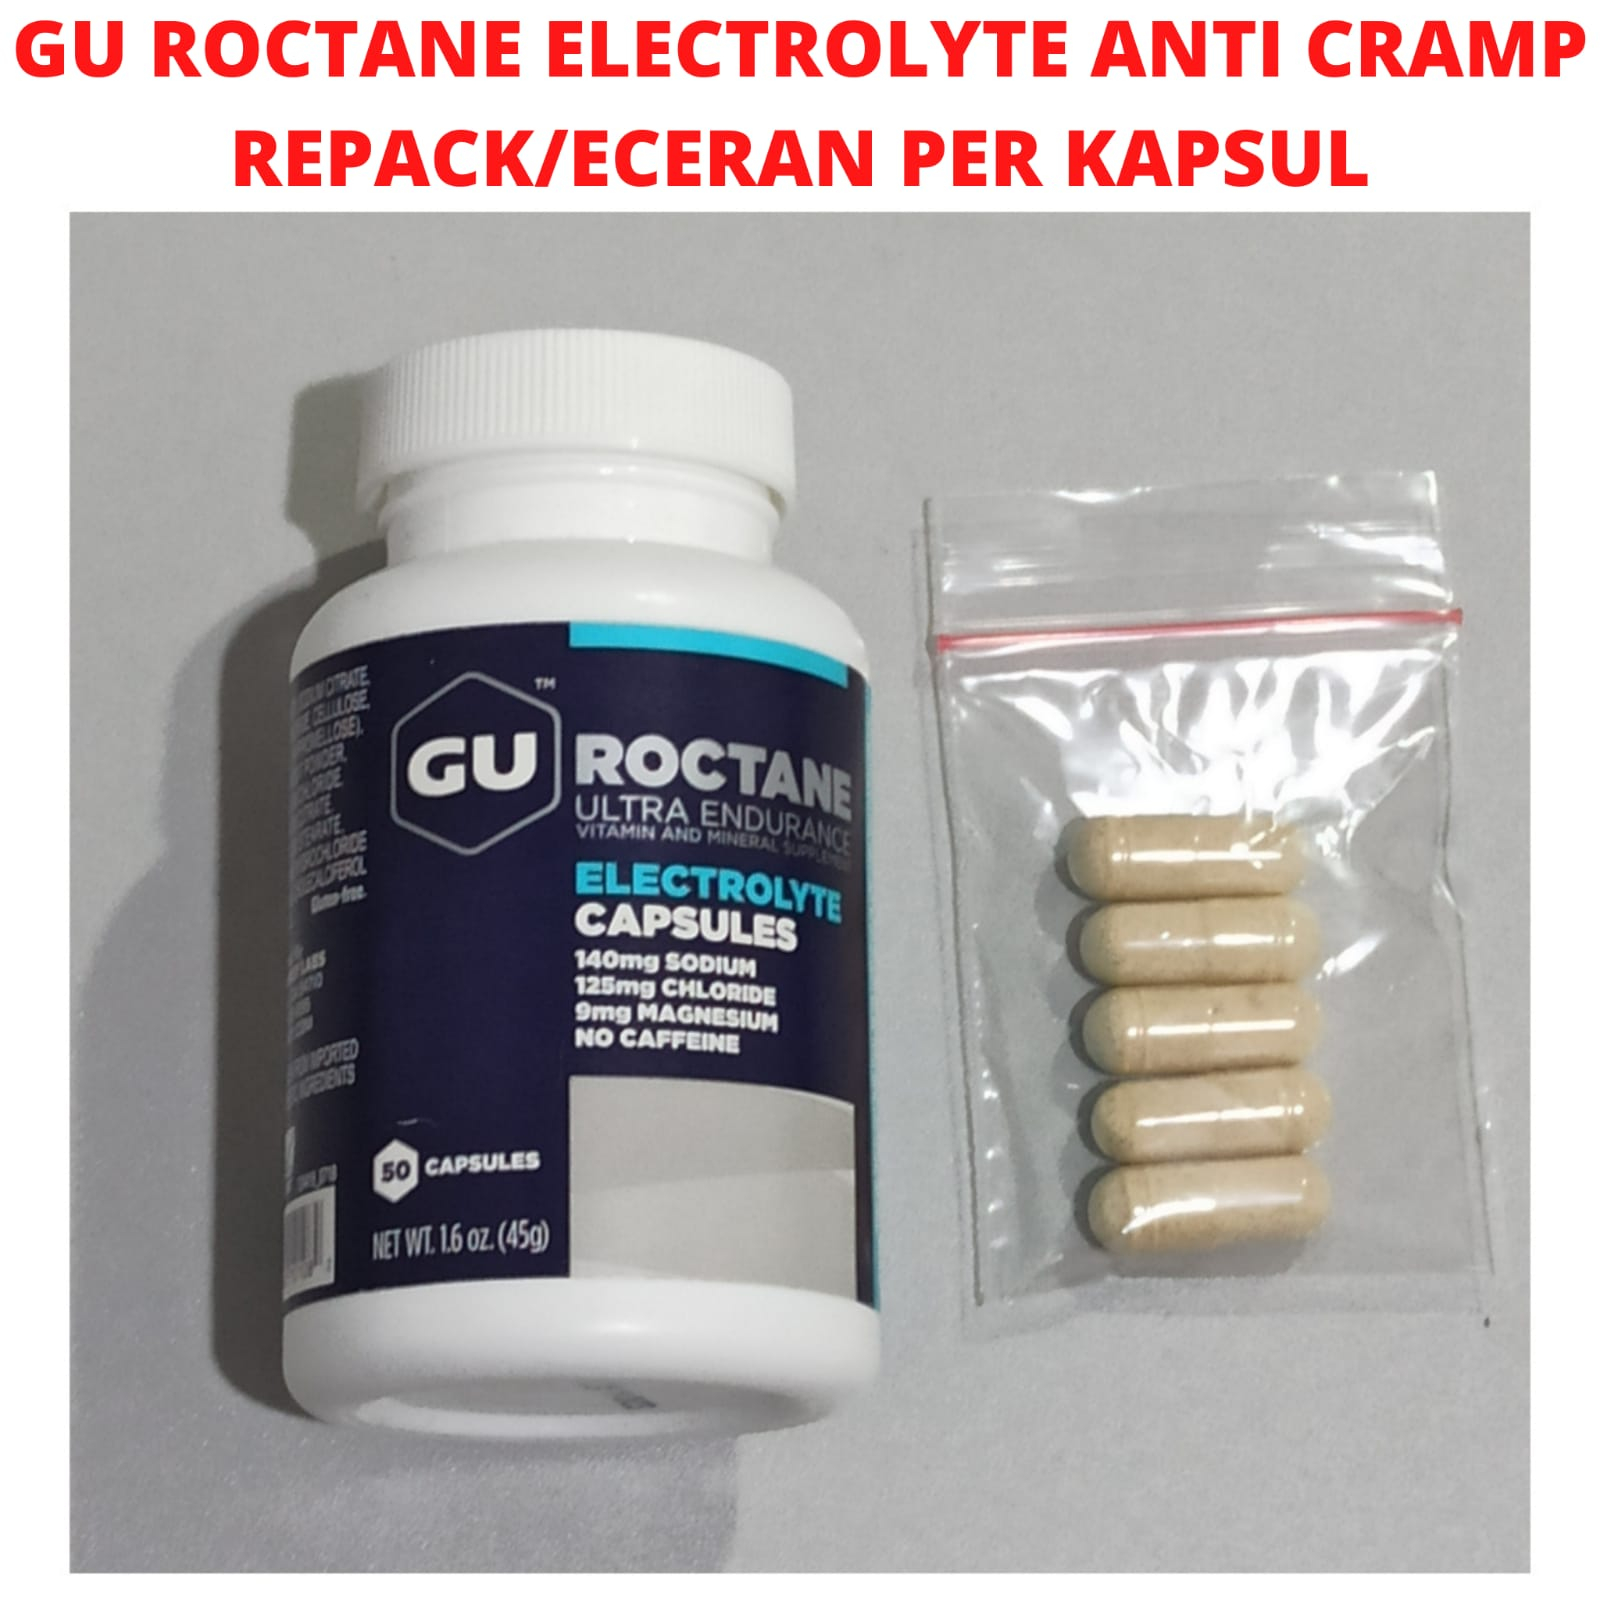 GU Energy Roctane Ultra Endurance Electrolyte Capsules saltstick lari sepeda - REPACK PER CAPS